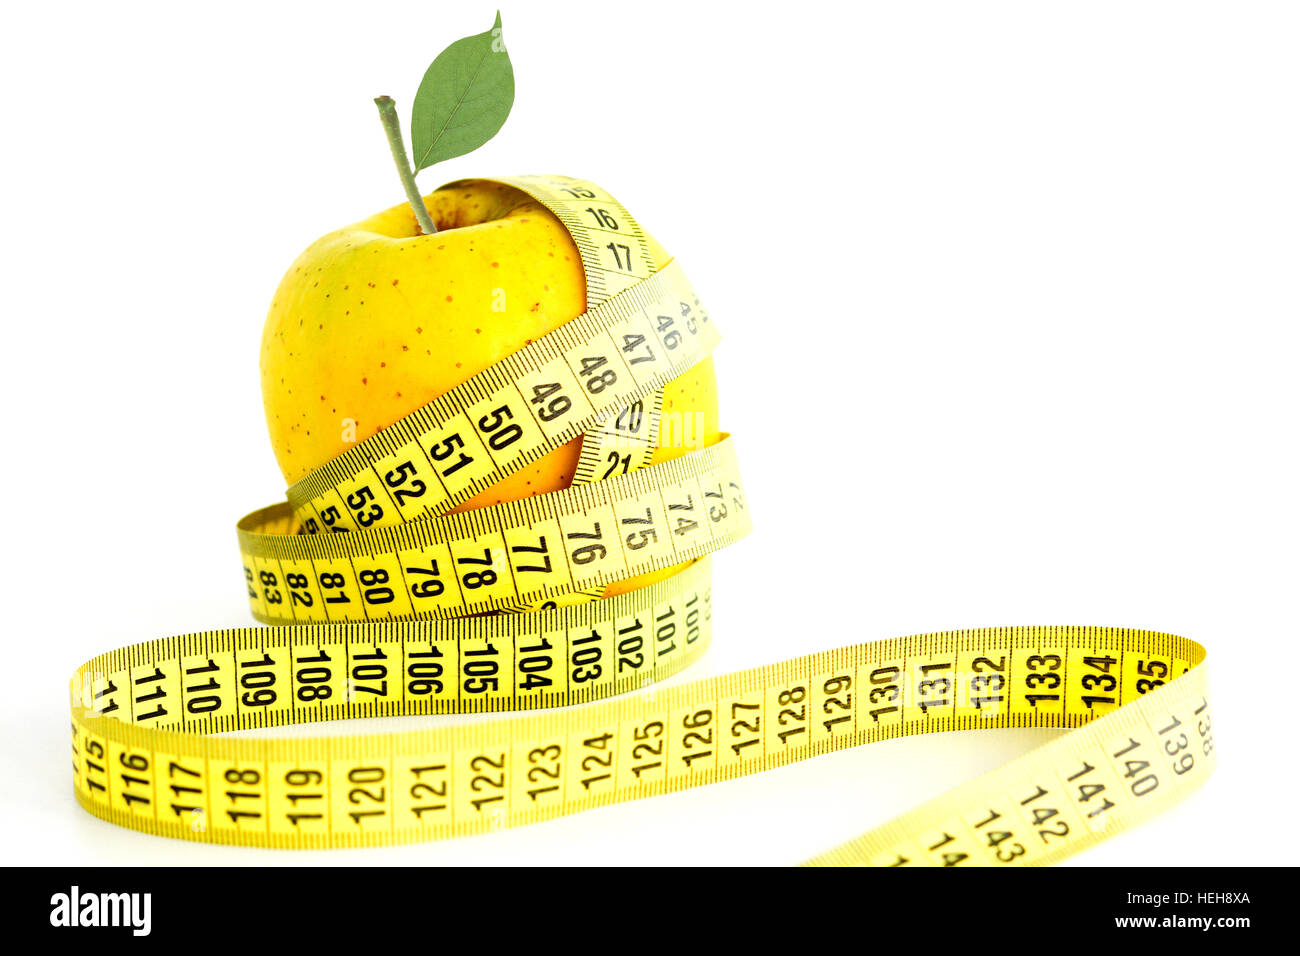 Kontrolle der Ernährung führt Konzept mit Messung Band und grüner Apfel auf weißem Hintergrund Stockfoto